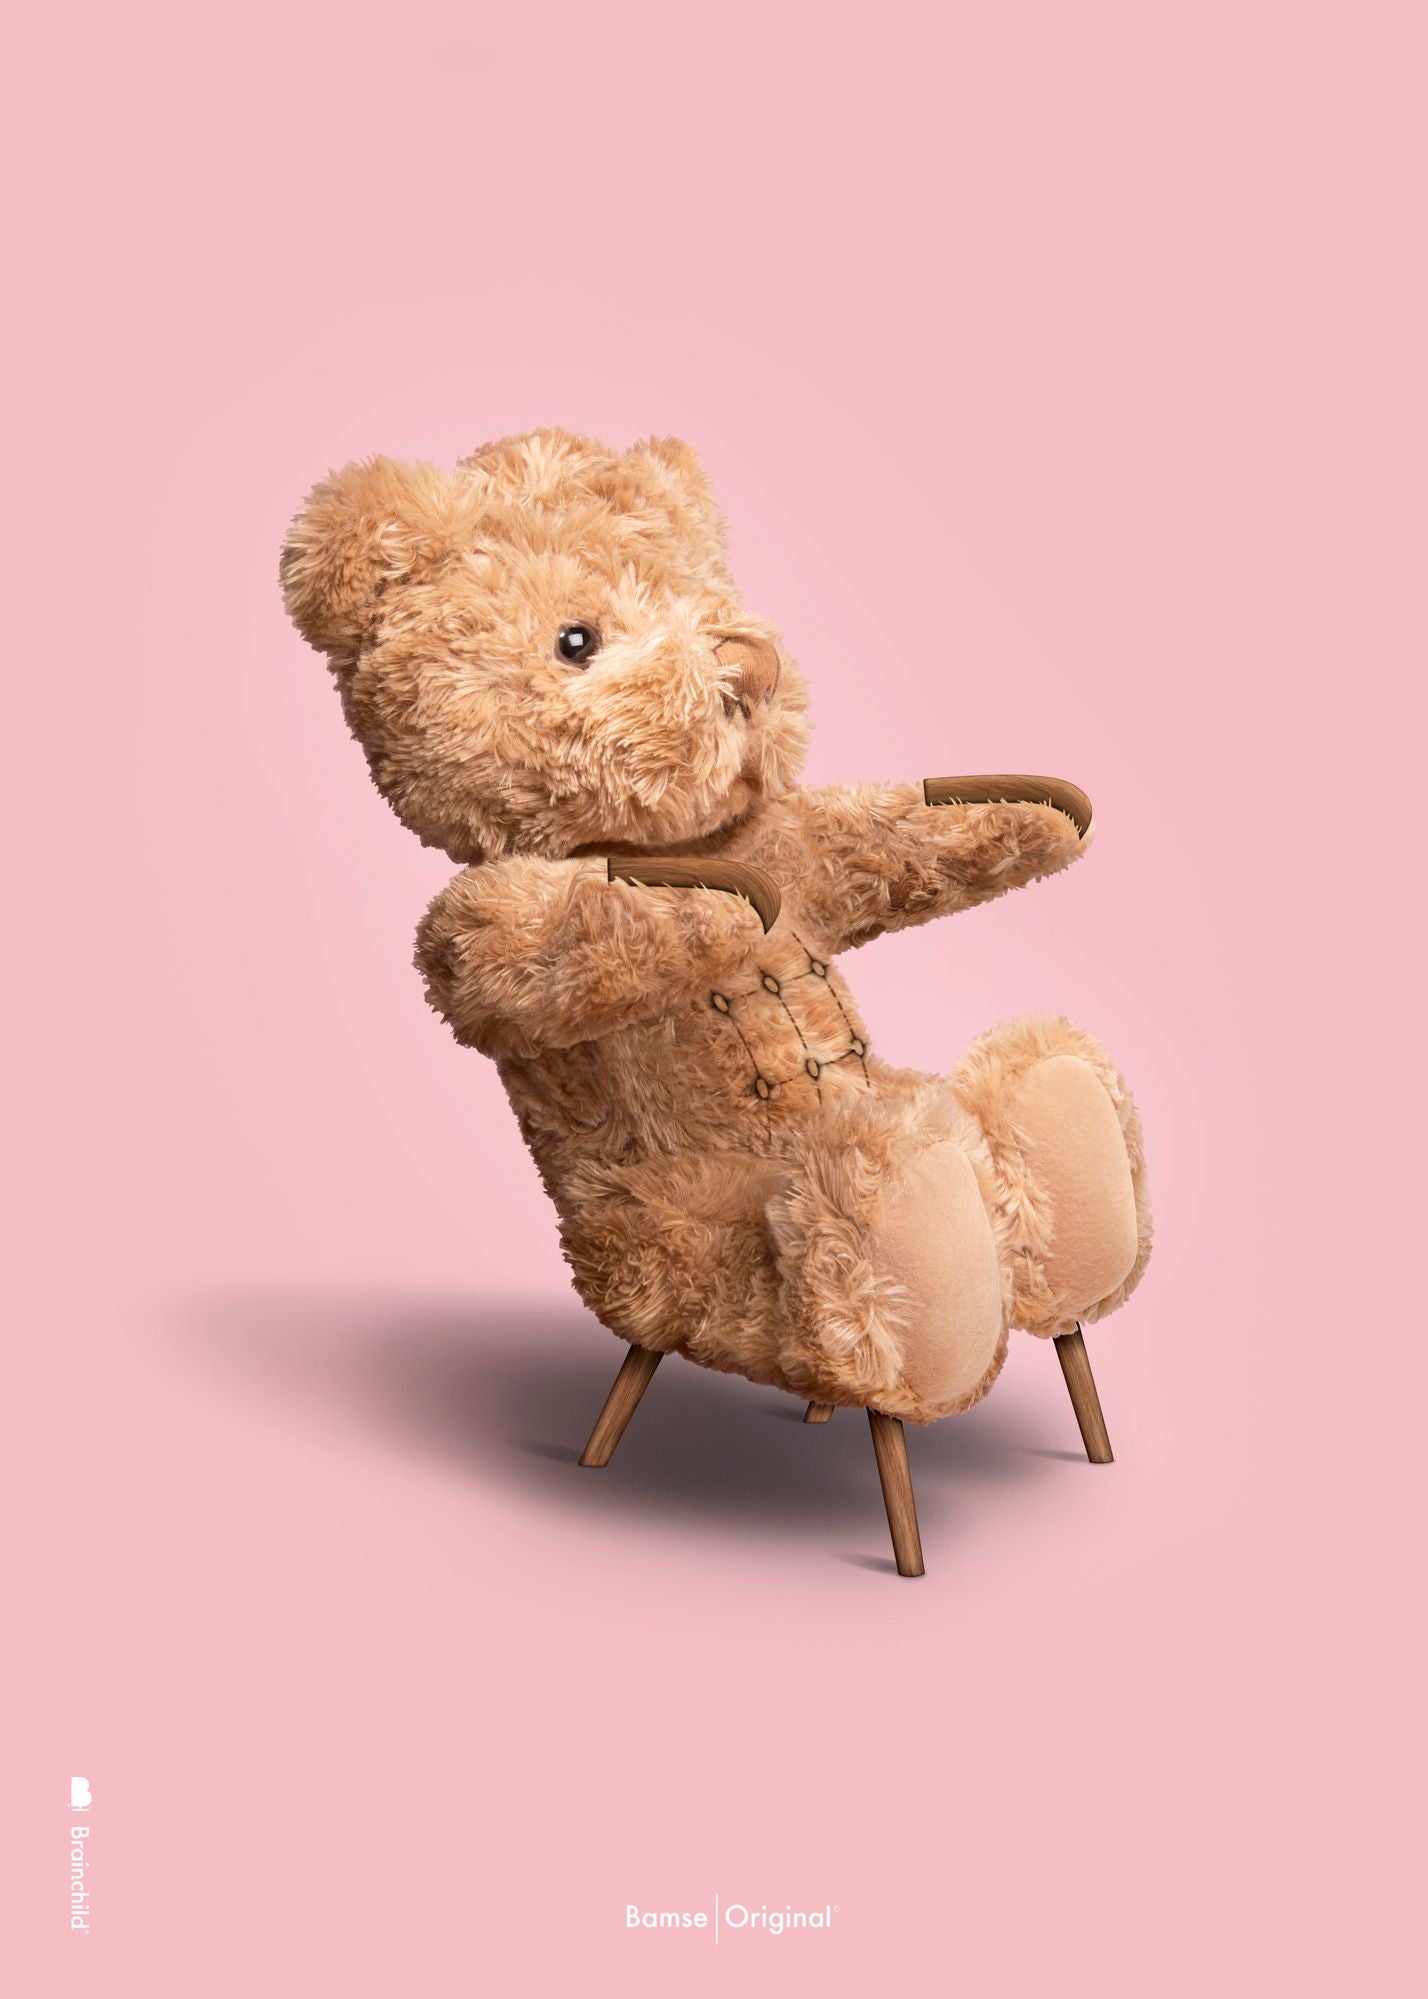 Brainchild Teddy Bear Classic Poster uten ramme 30x40 cm, rosa bakgrunn